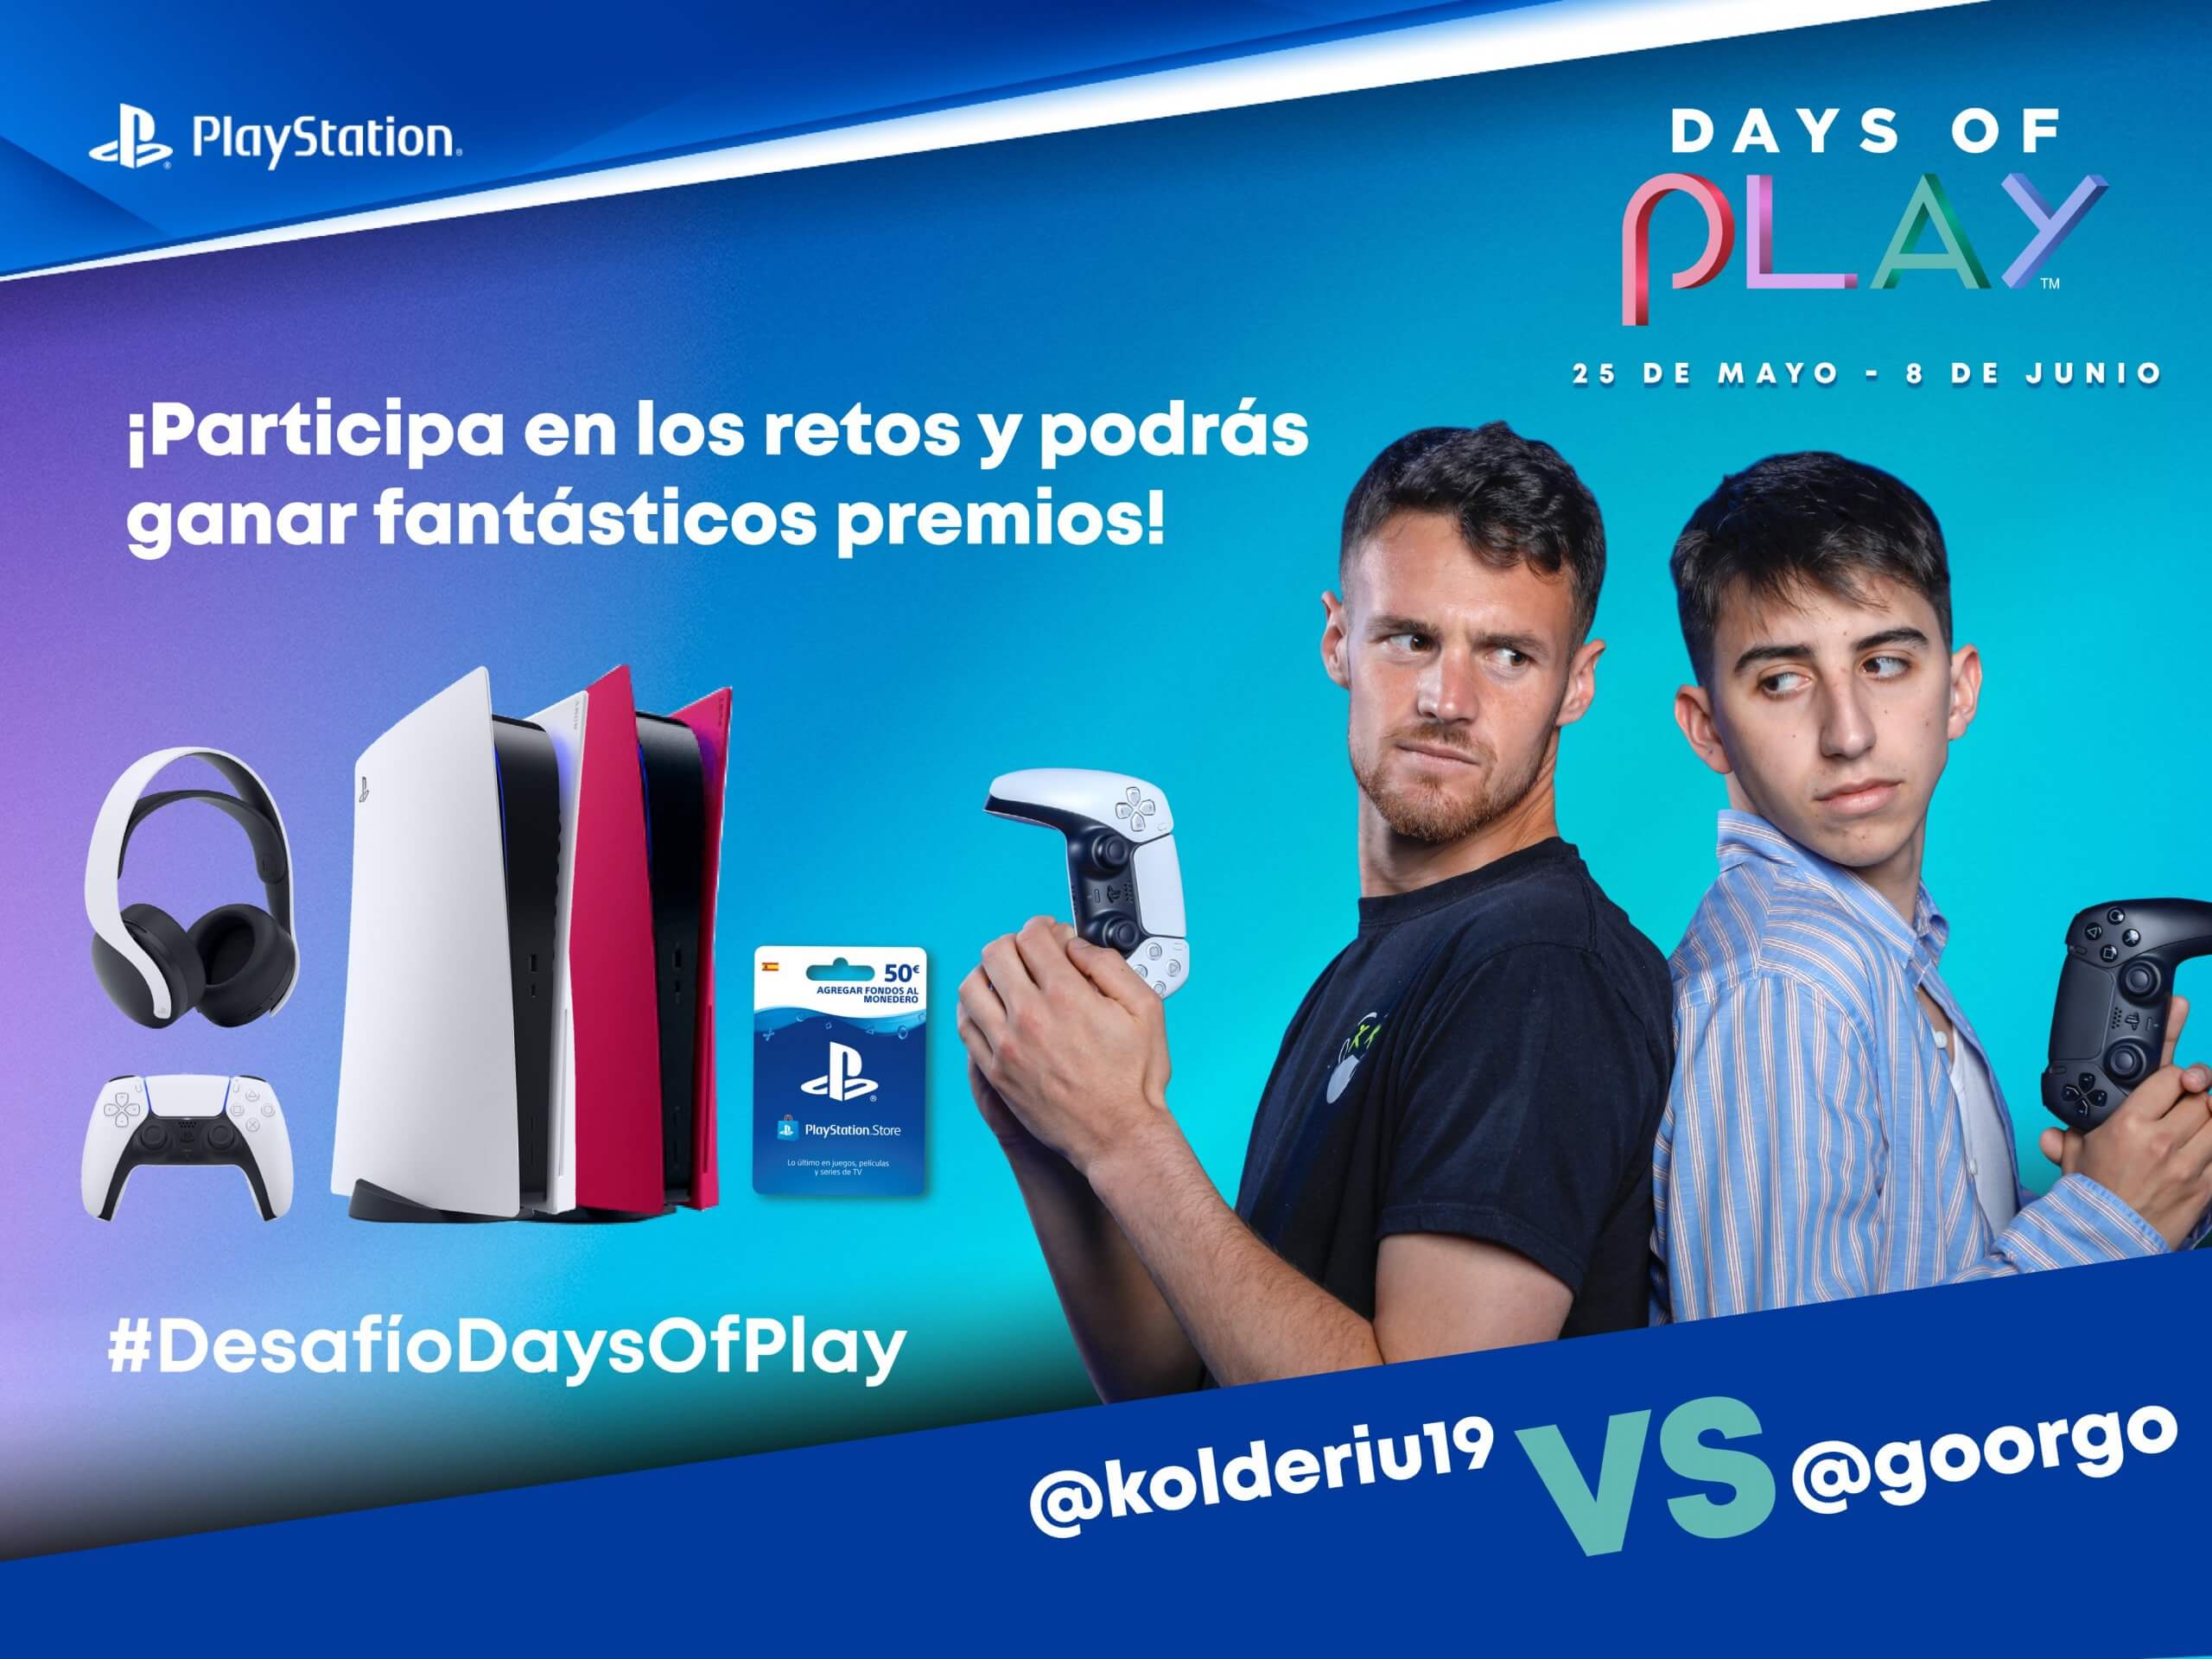 Los Desafíos Days of Play llegan con premios para los fans de PlayStation